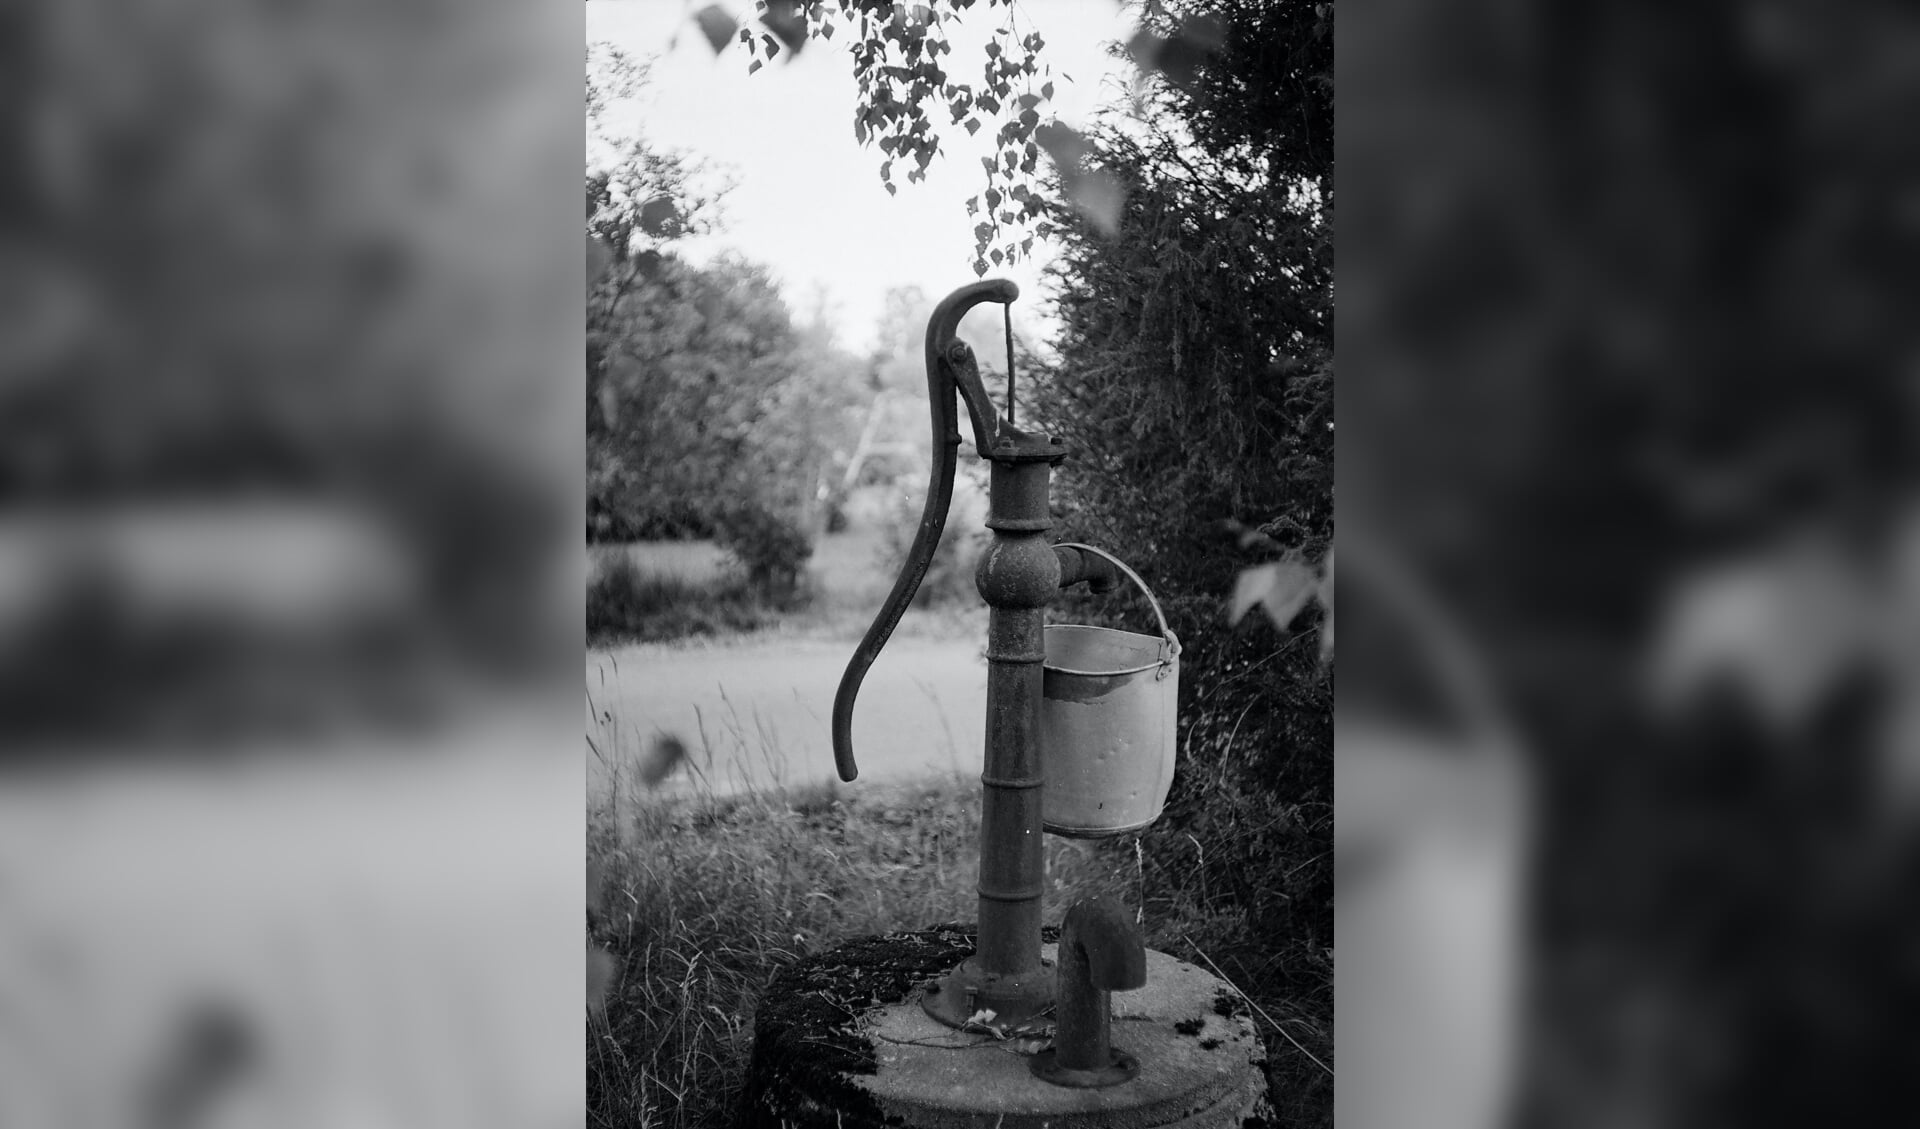 Ooit, tot 1927, waren de inwoners van Egmond-Binnen voor drinkwater afhankelijk van plaatselijke waterpompen